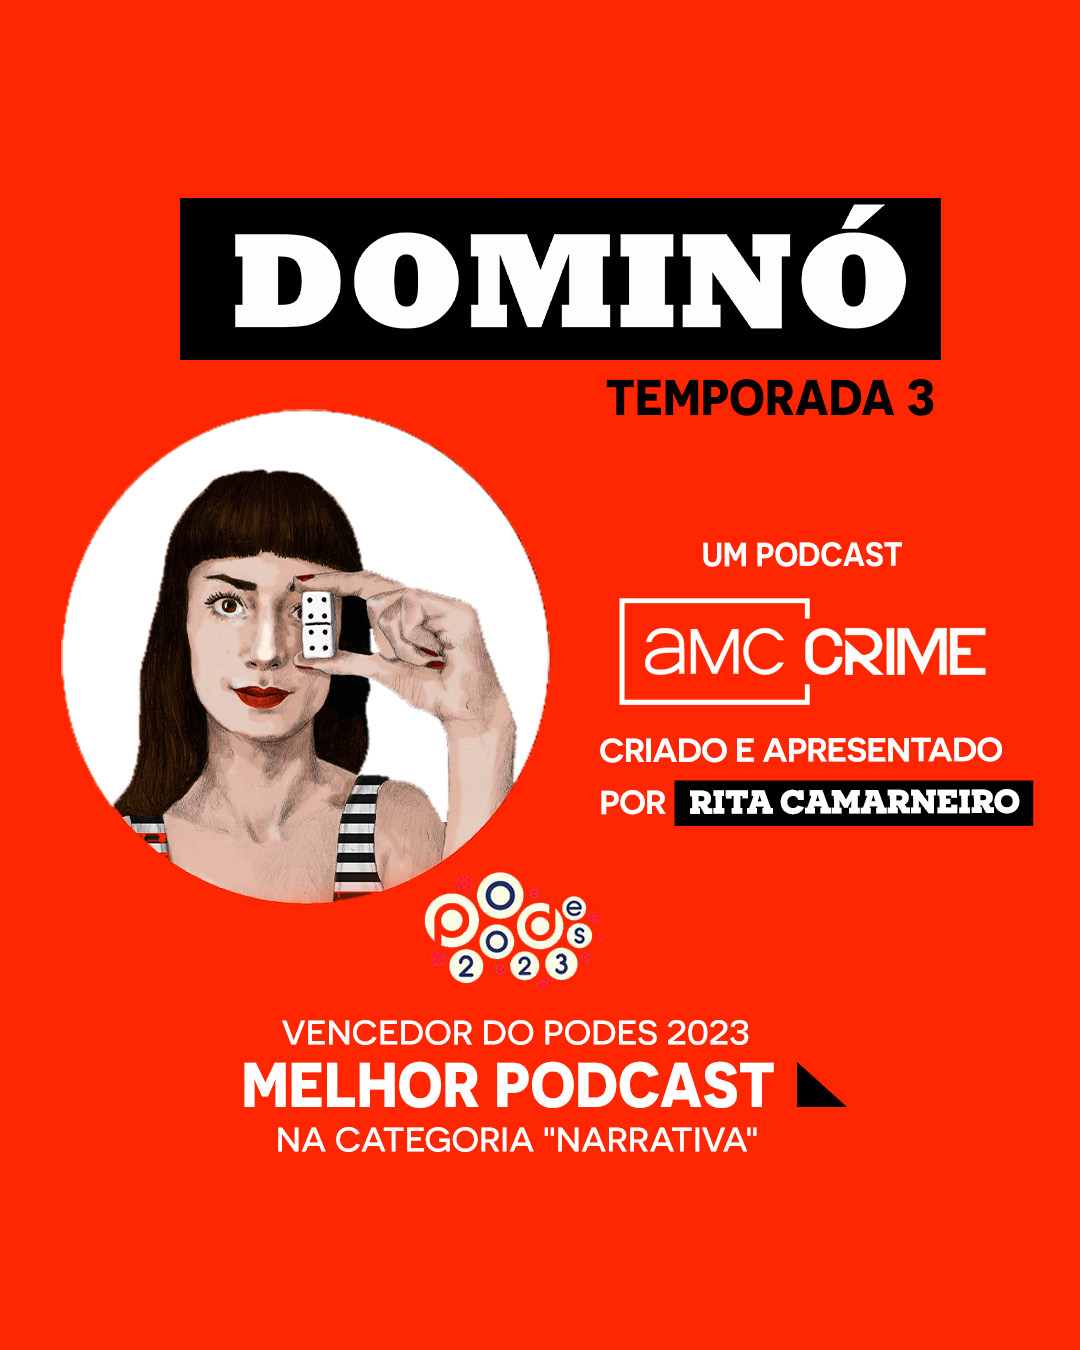 Podcast Dominó regressa para uma terceira temporada